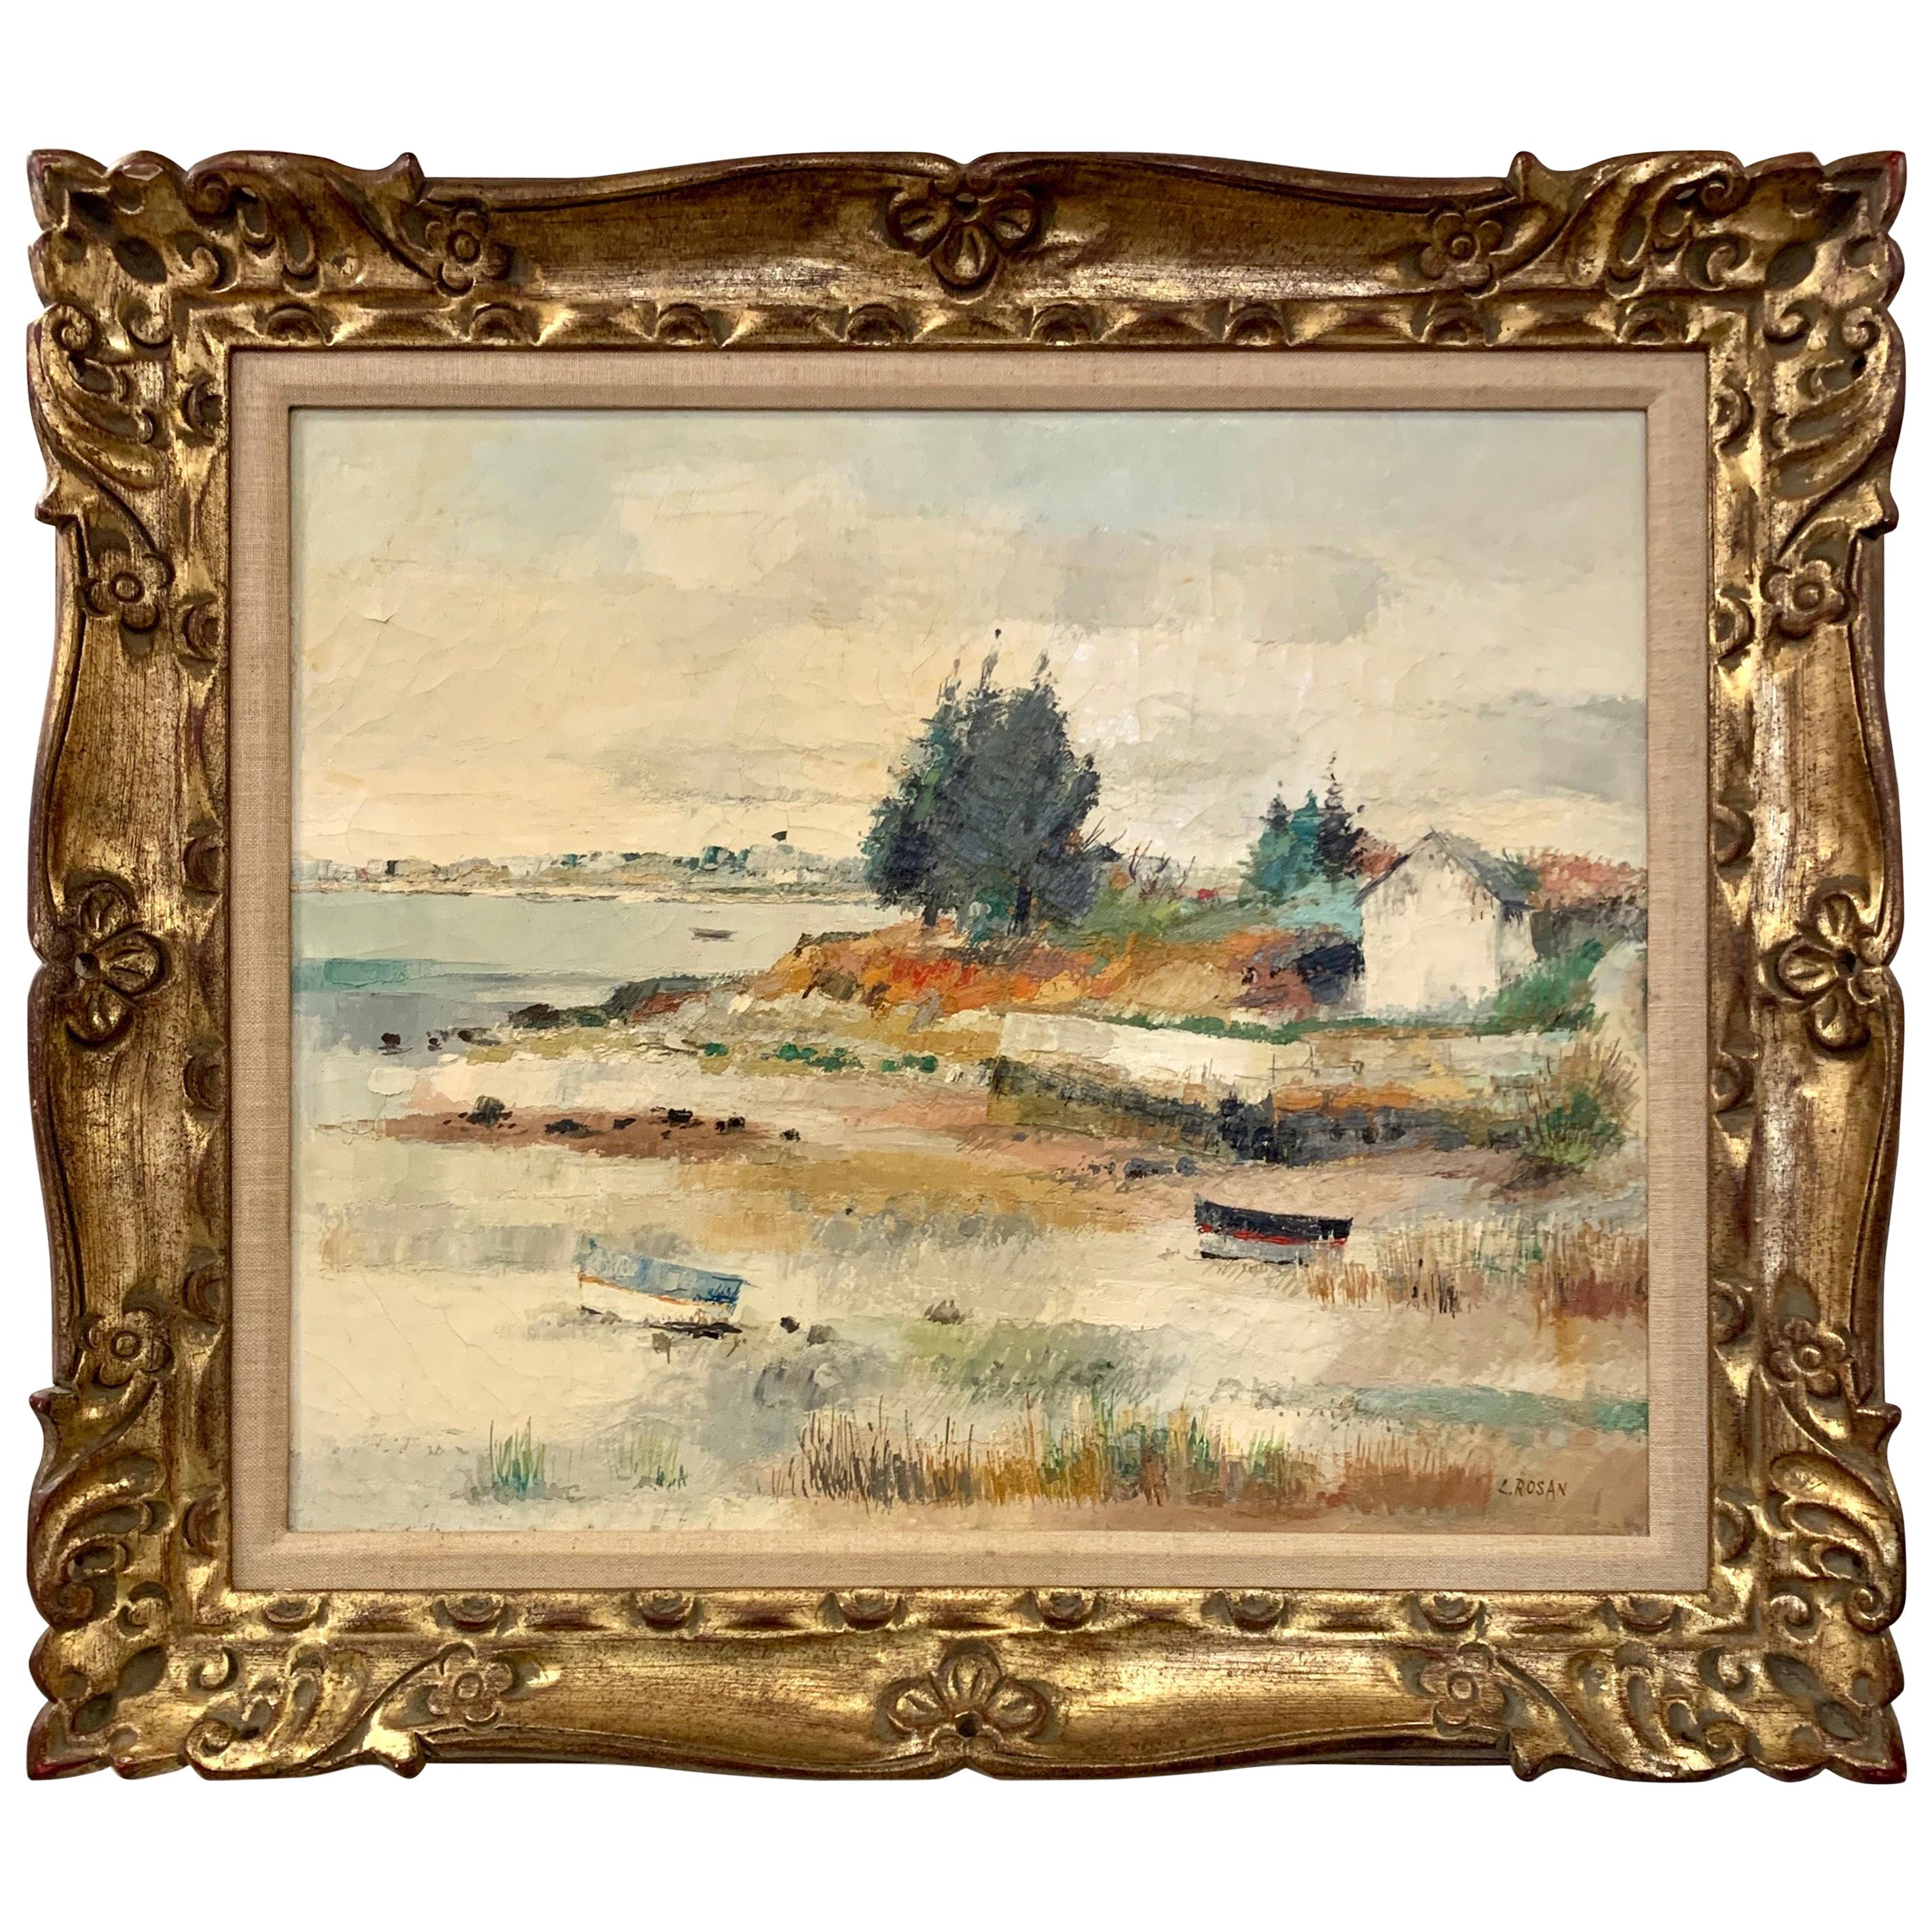 Peinture à l'huile de paysage avec cadre doré signé par l'artiste d'origine L. Rosan